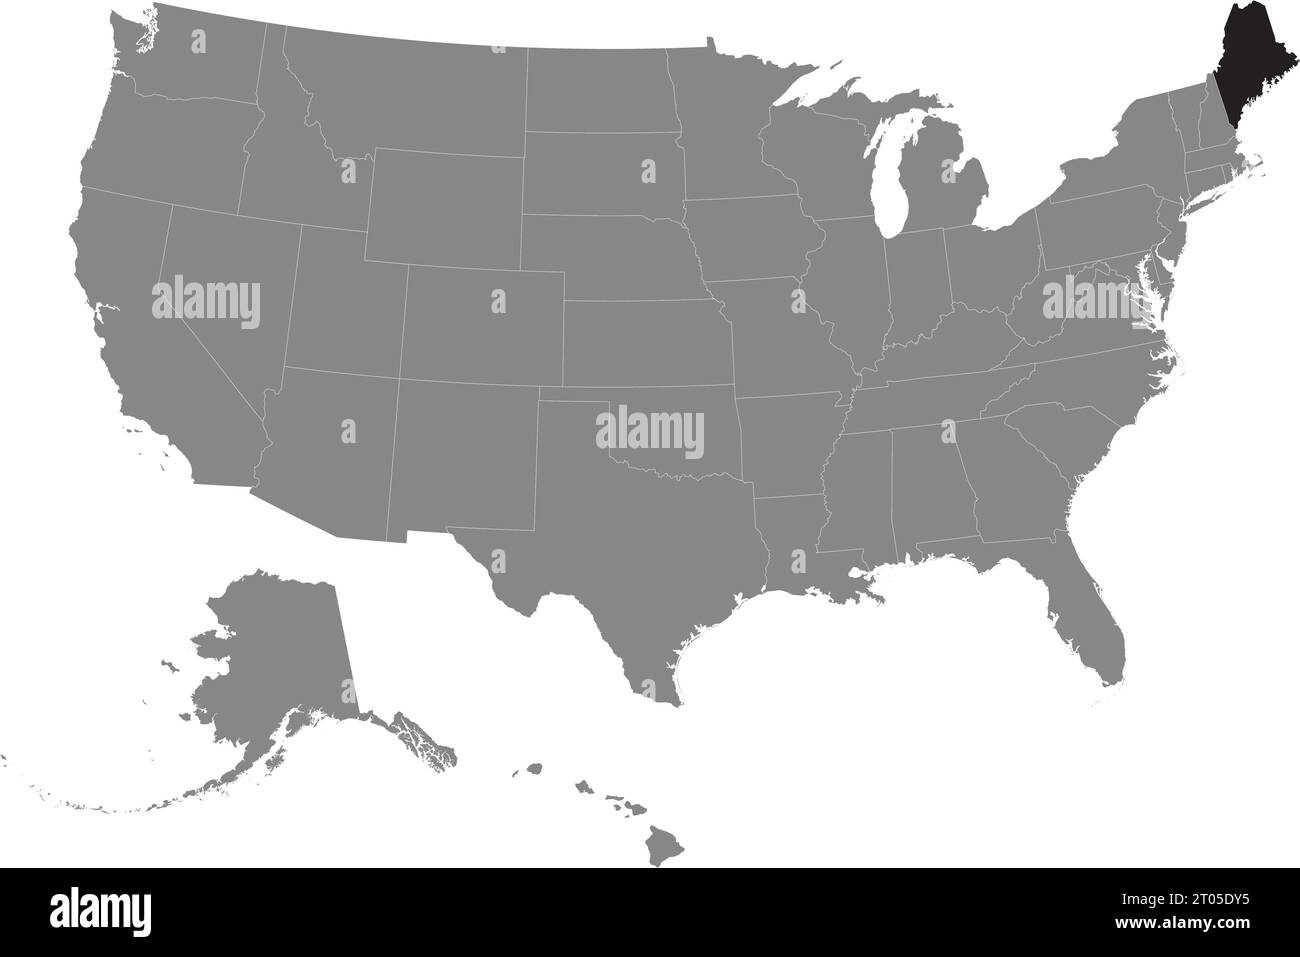 Schwarze CMYK-Bundeskarte von MAINE in detaillierter grauer, leerer politischer Karte der Vereinigten Staaten von Amerika auf transparentem Hintergrund Stock Vektor